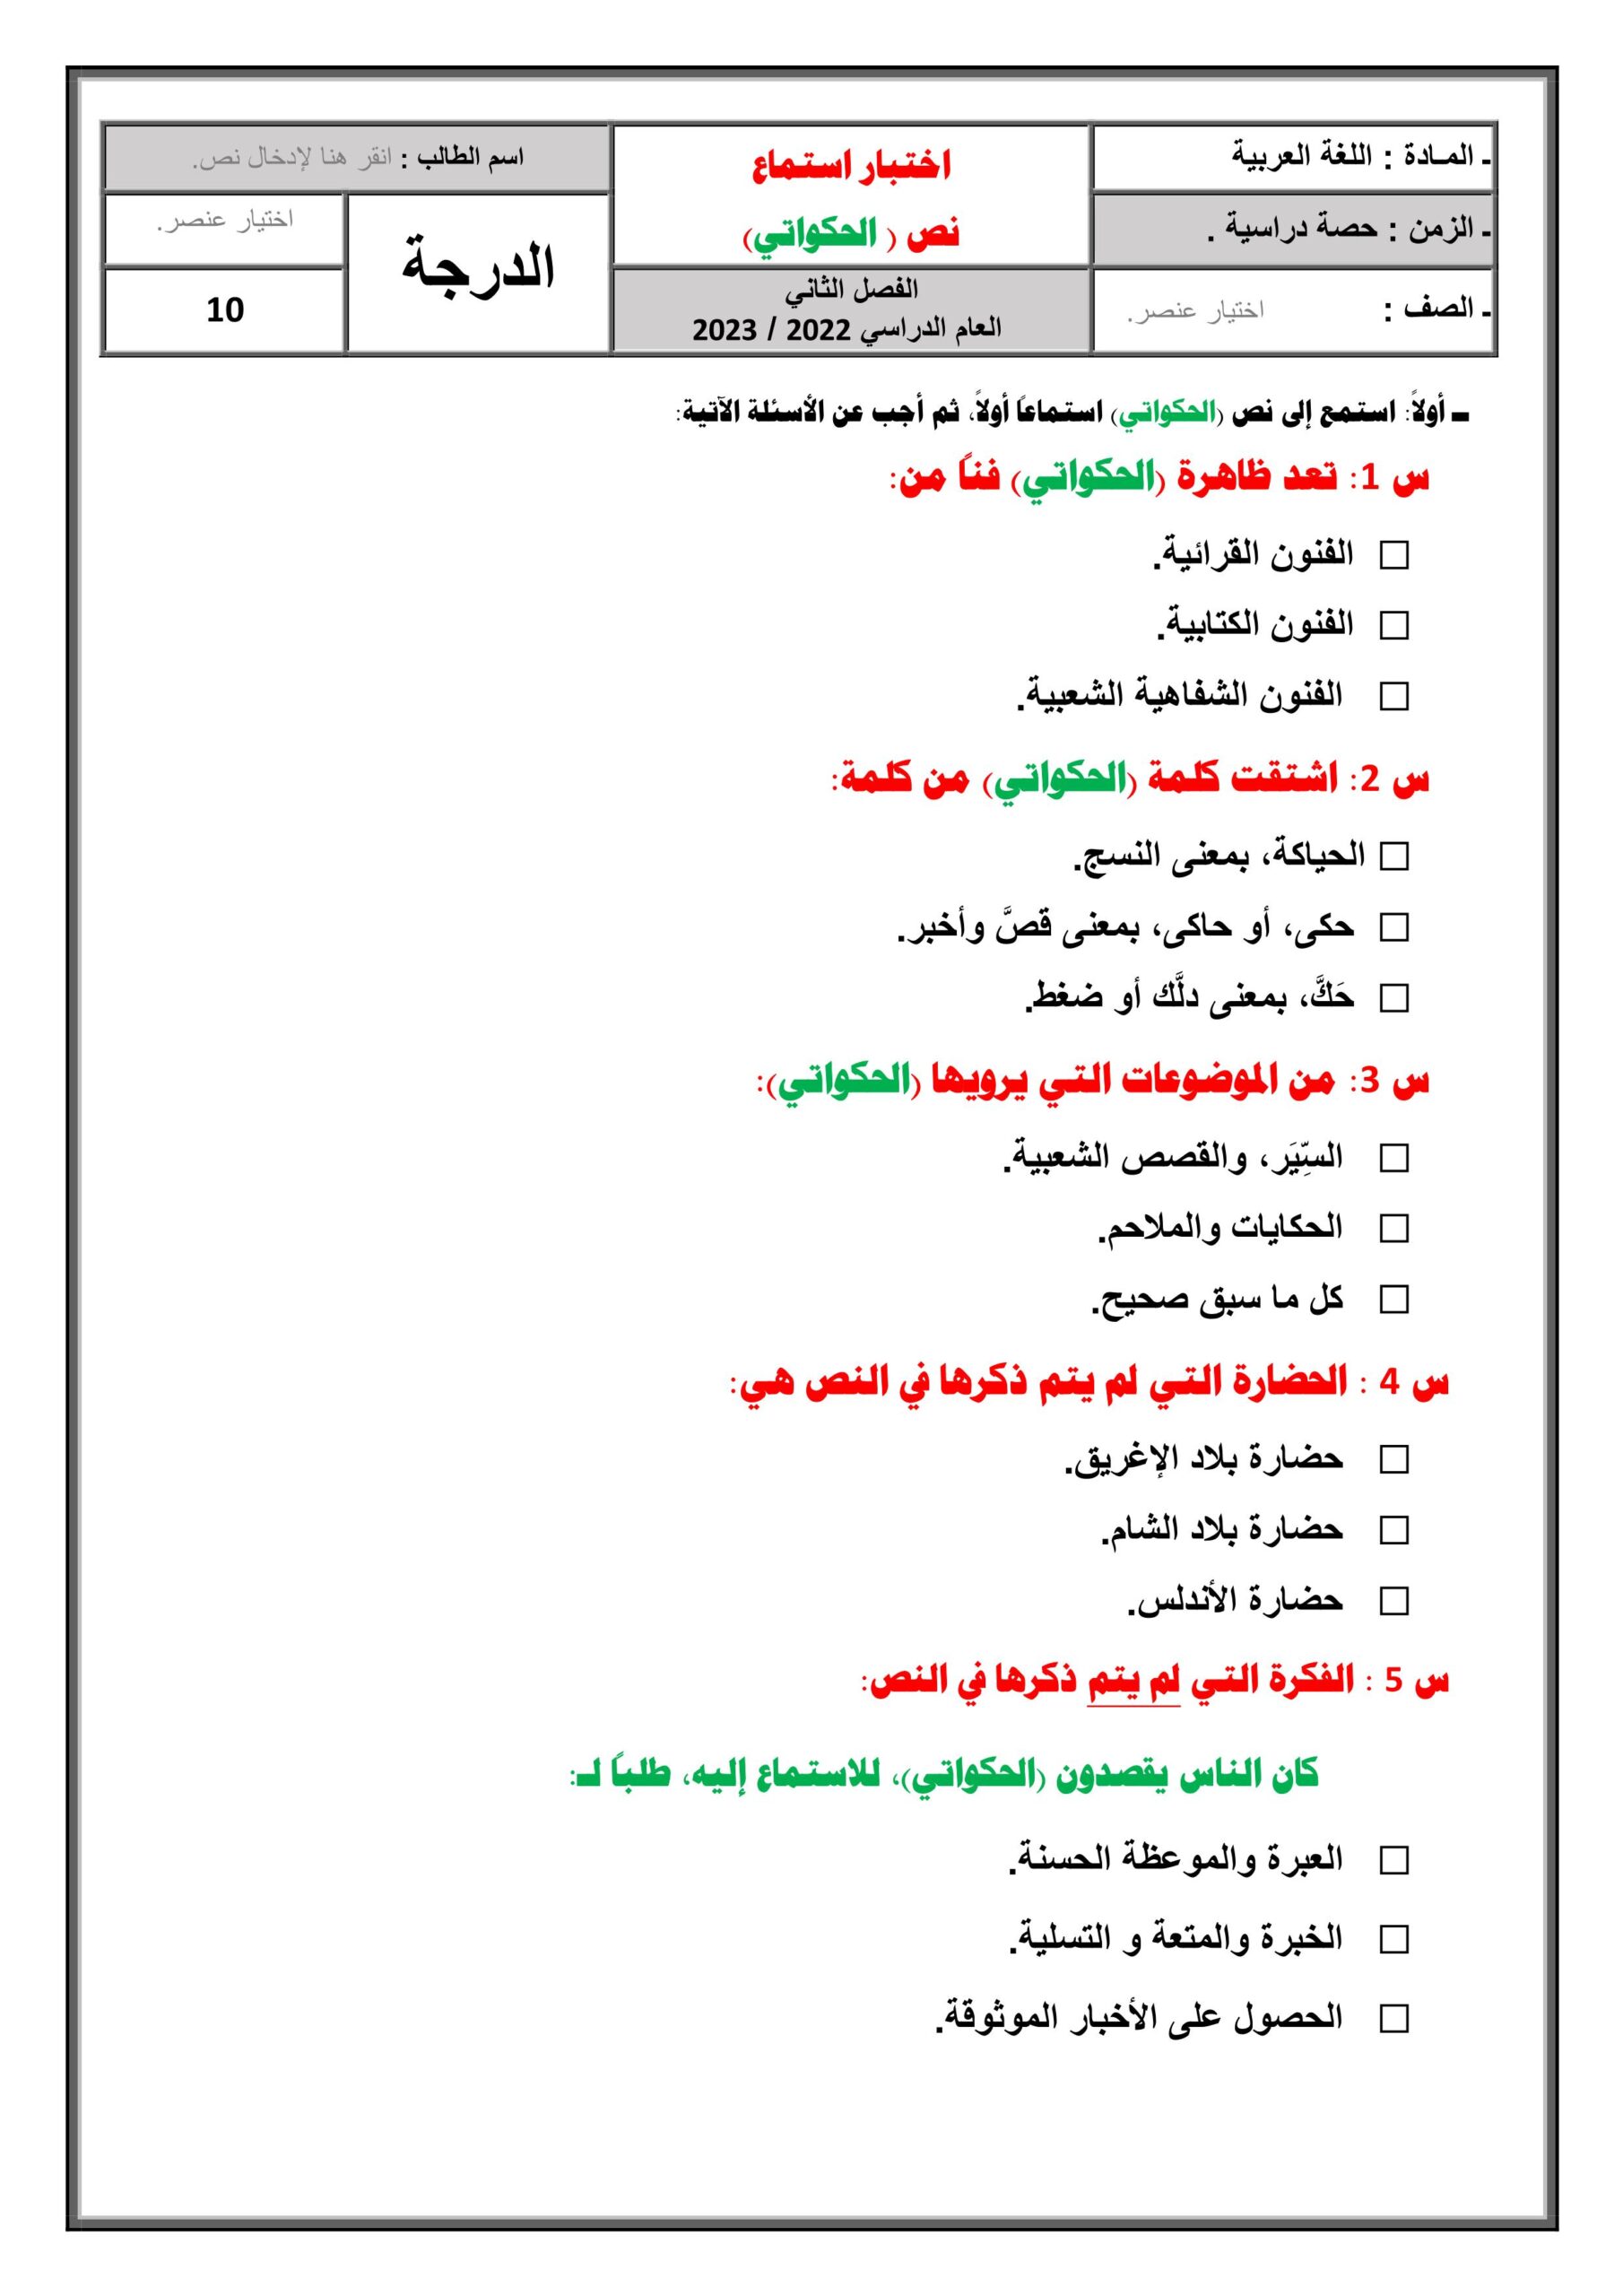 اختبار استماع نص الحكواتي اللغة العربية الصف الثامن 